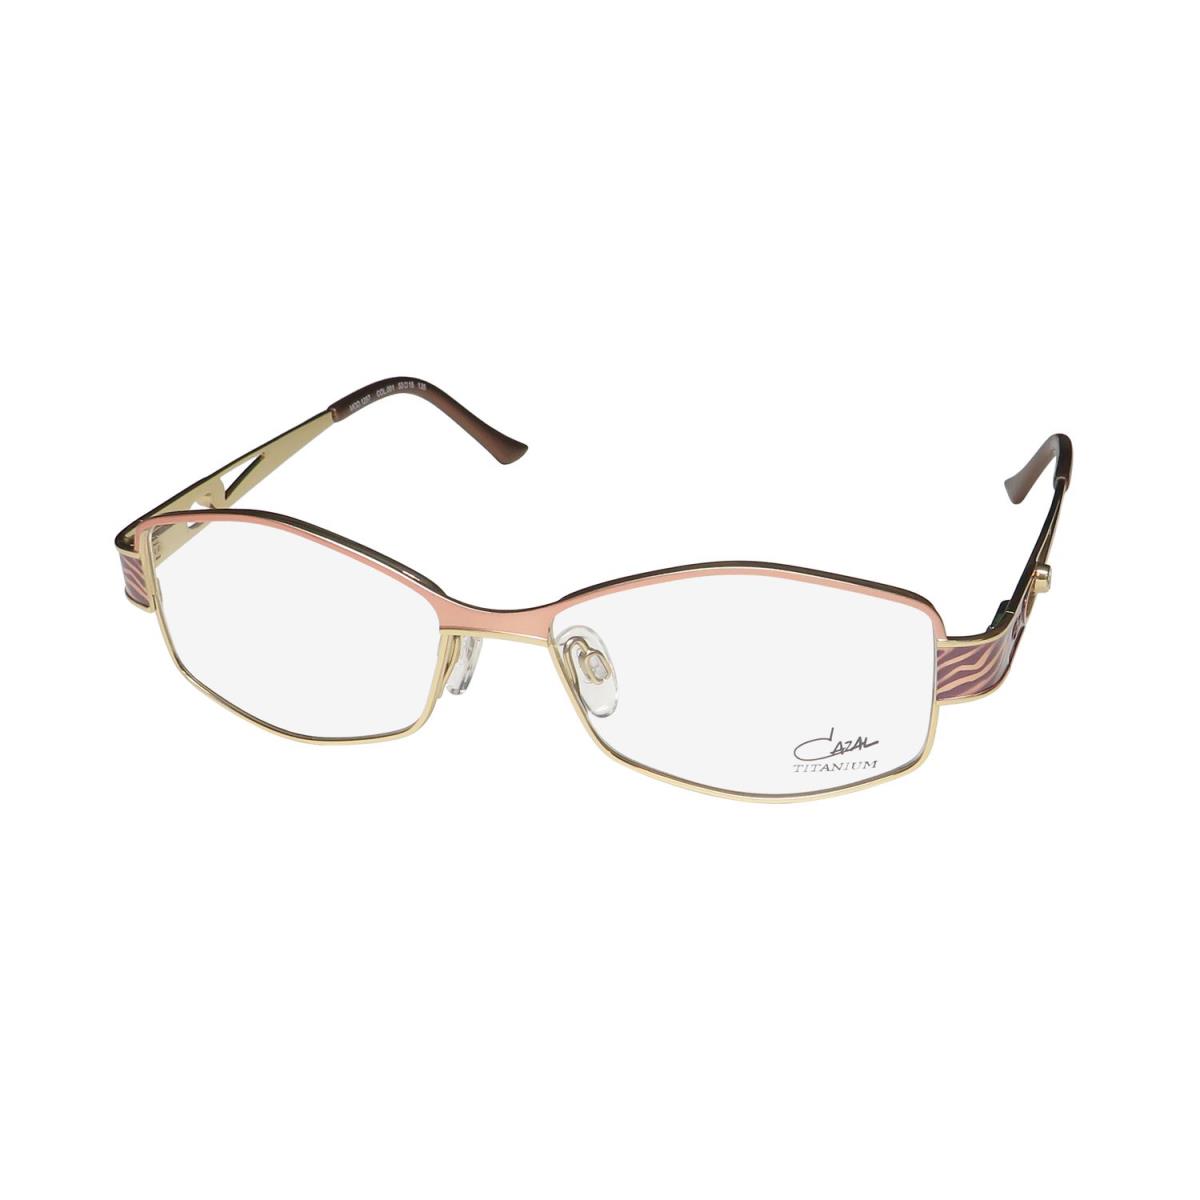 Cazal 1257 Titanium Metal Retro/vintage Collection Rare Eyeglass Frame/glasses Salmon / Gold